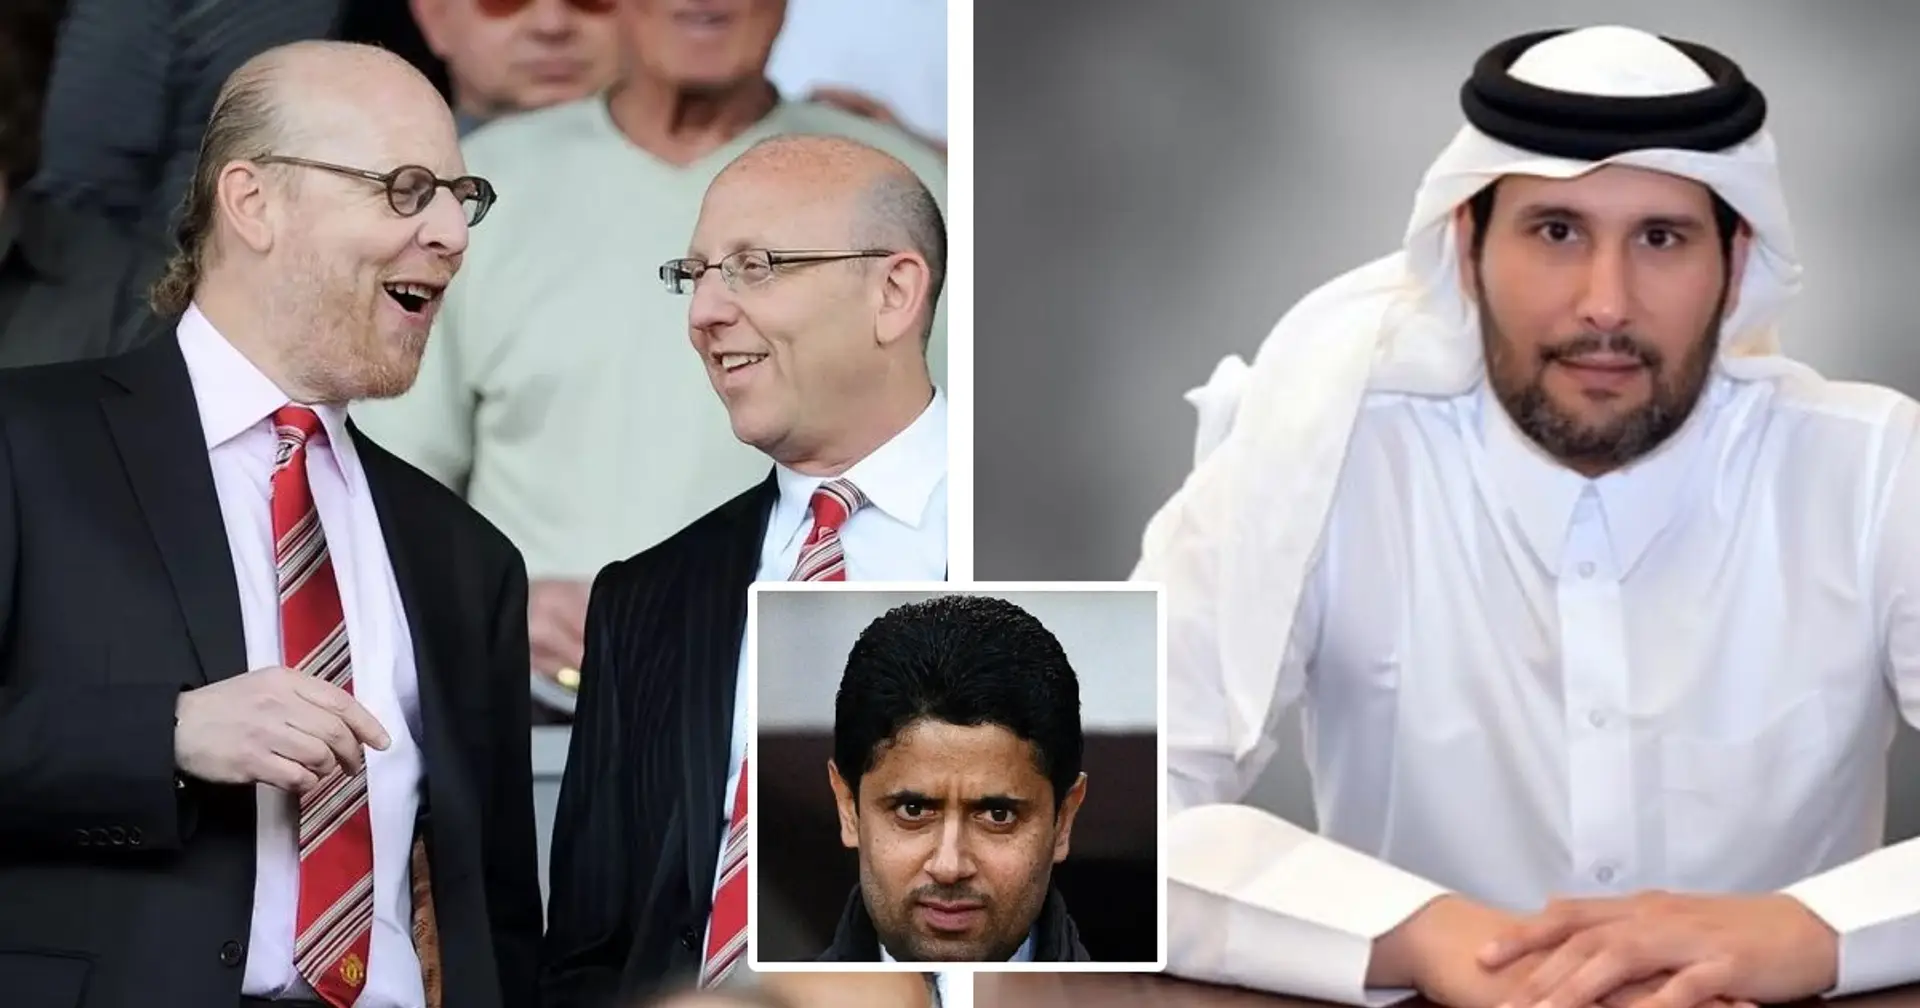 Explained: PSG president Nasser Al-Khelaifi's role in Man United takeover bid 